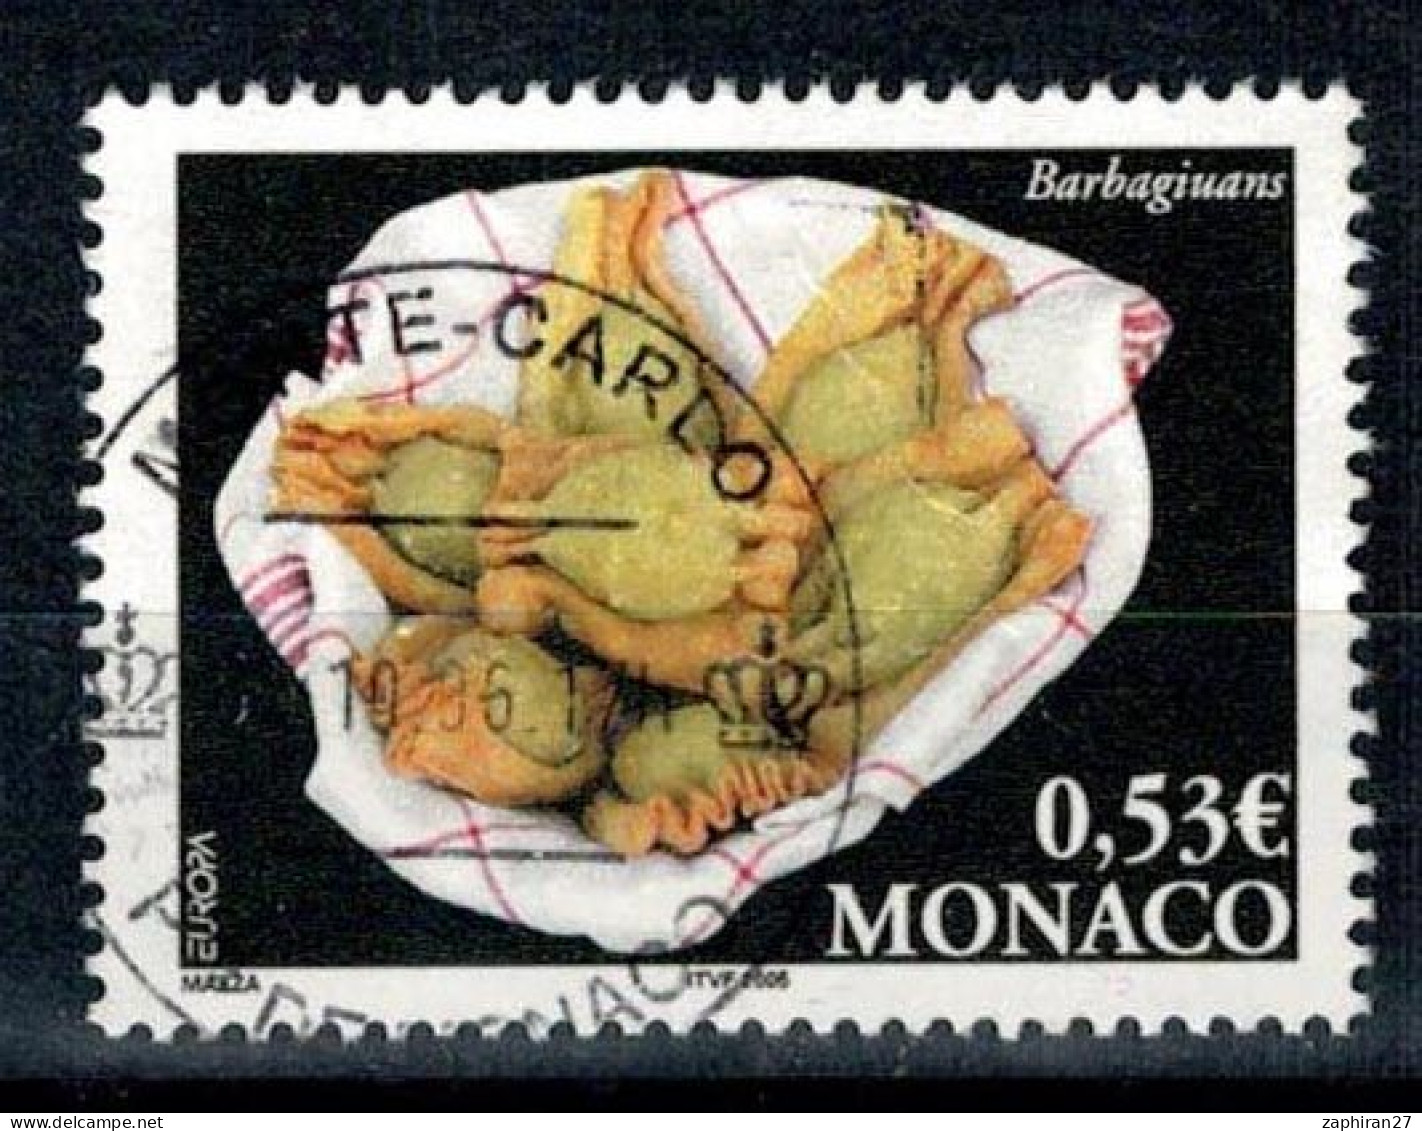 2006 BARBAGINUS MONACO OBLITERE  #234# - Used Stamps